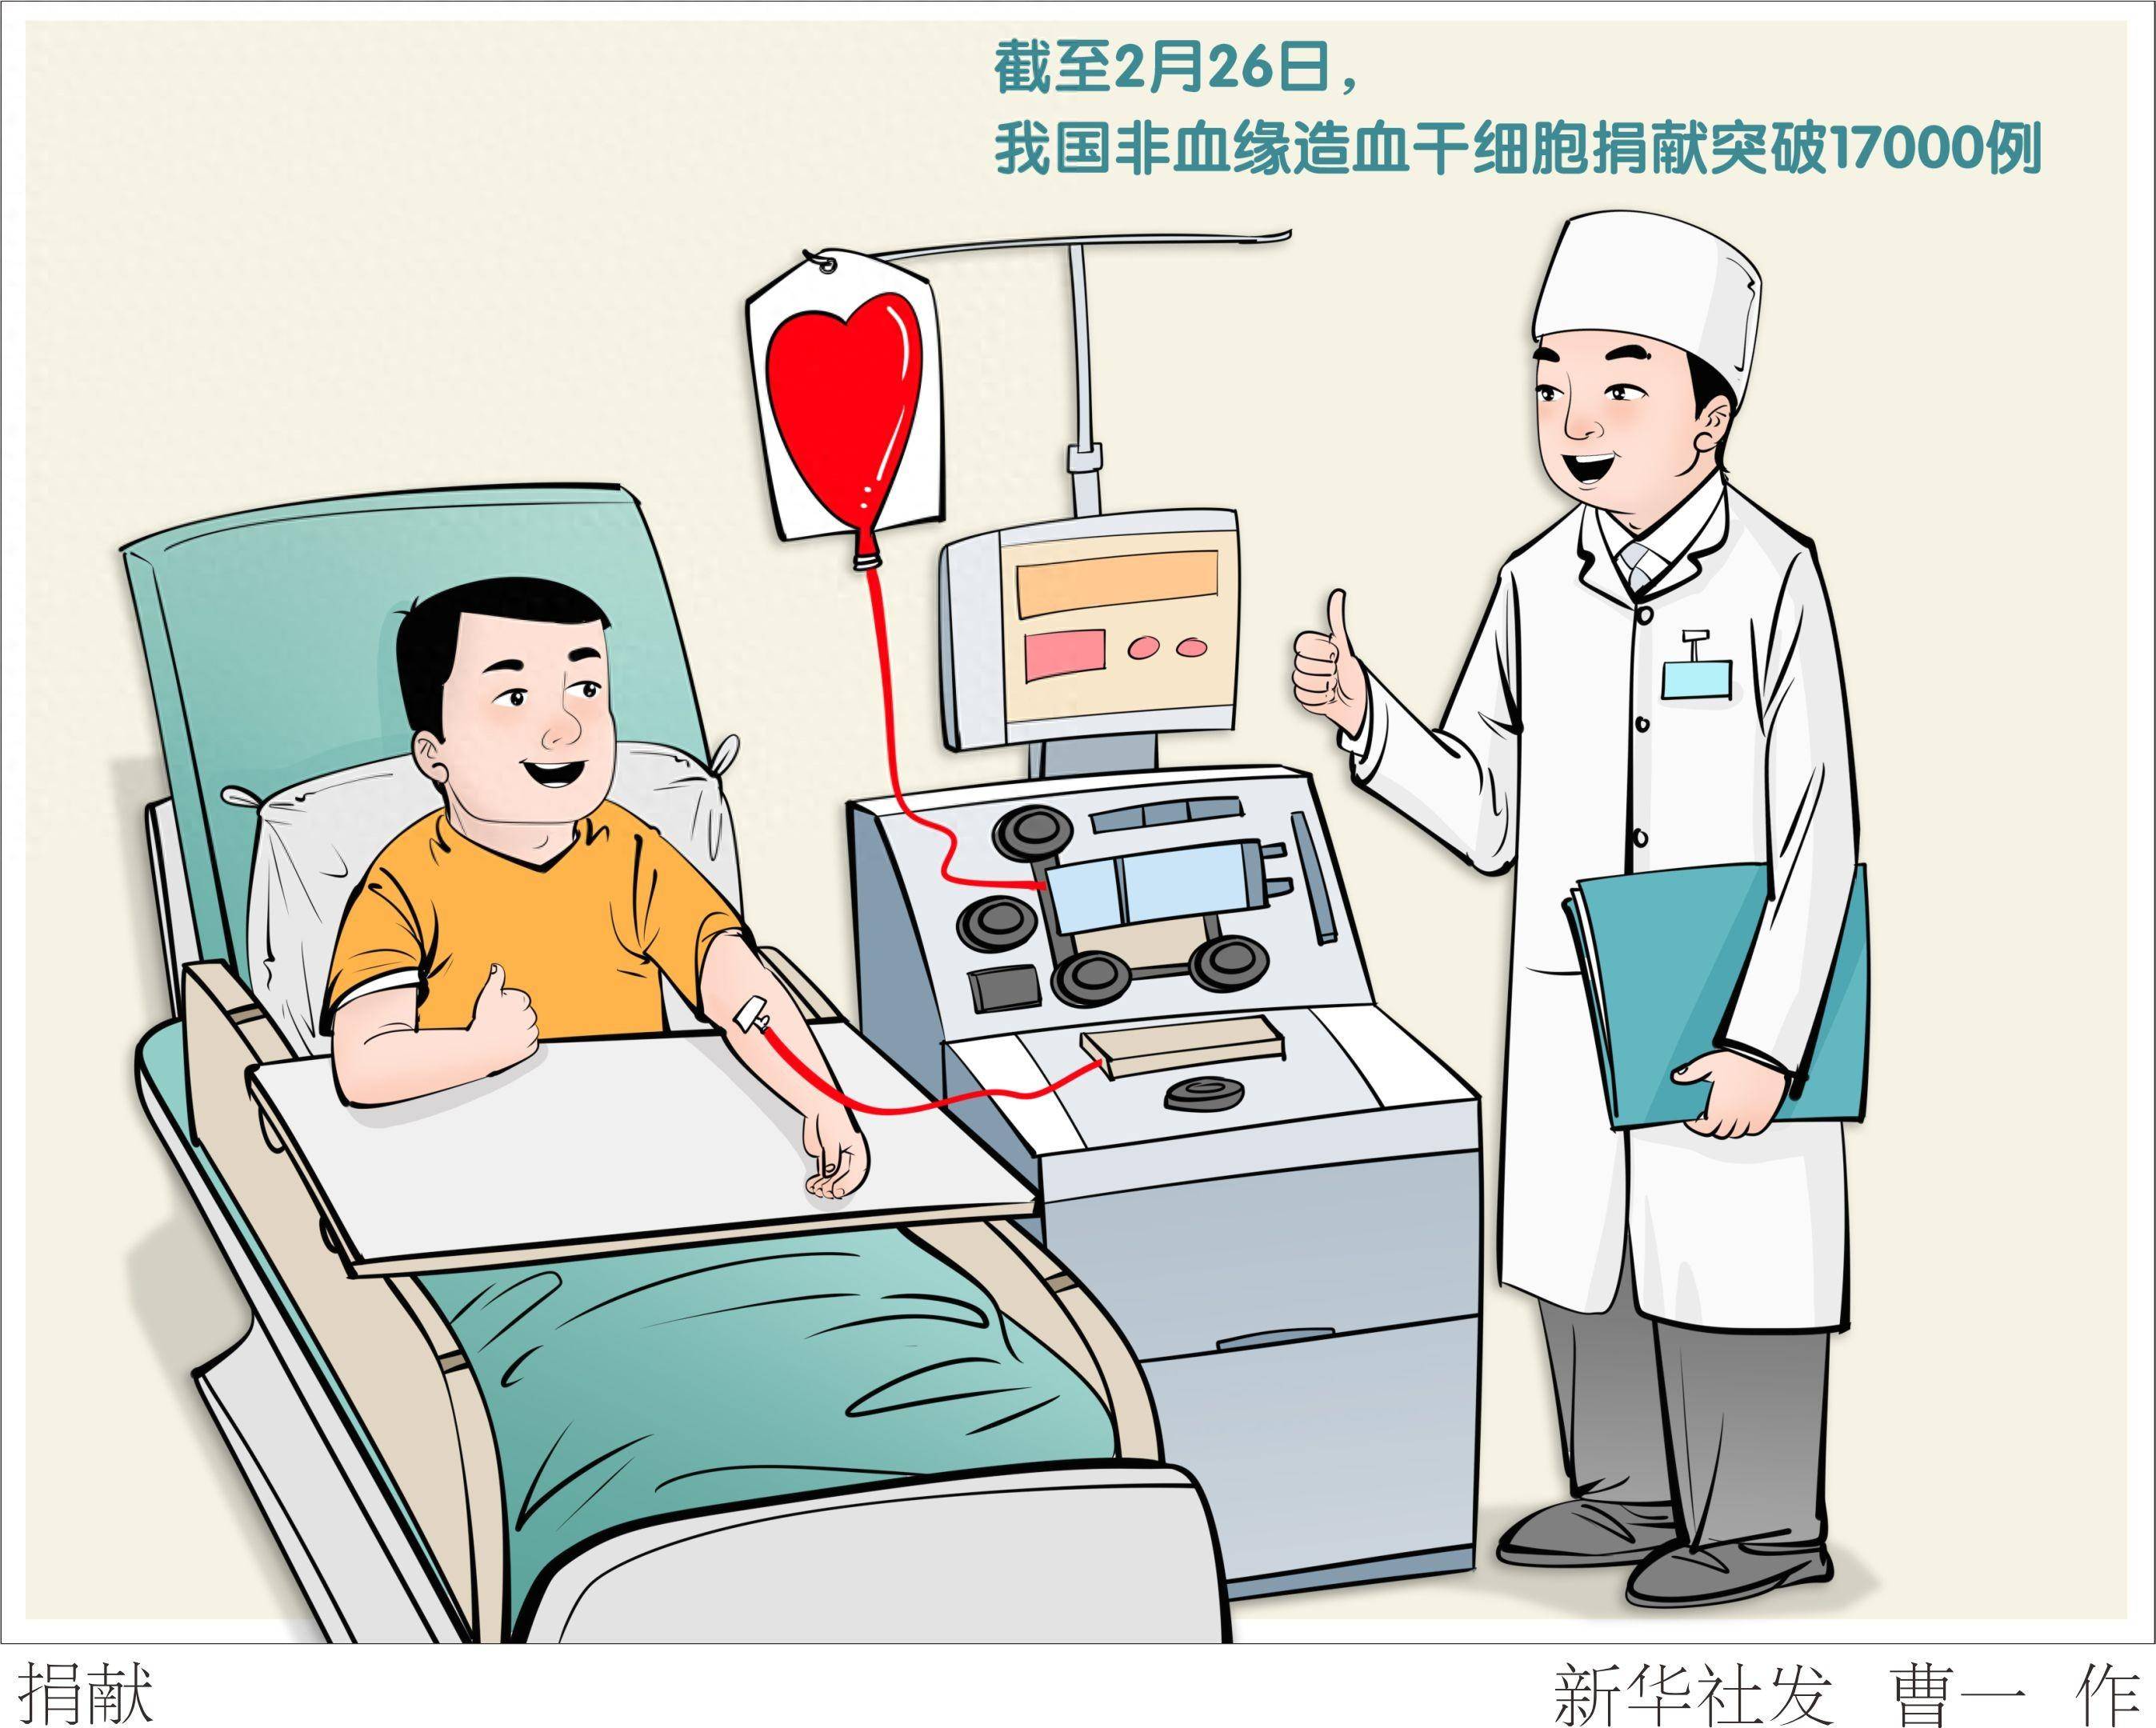 截至2月26日,中国红十字会中华骨髓库非血缘造血干细胞捐献突破17000